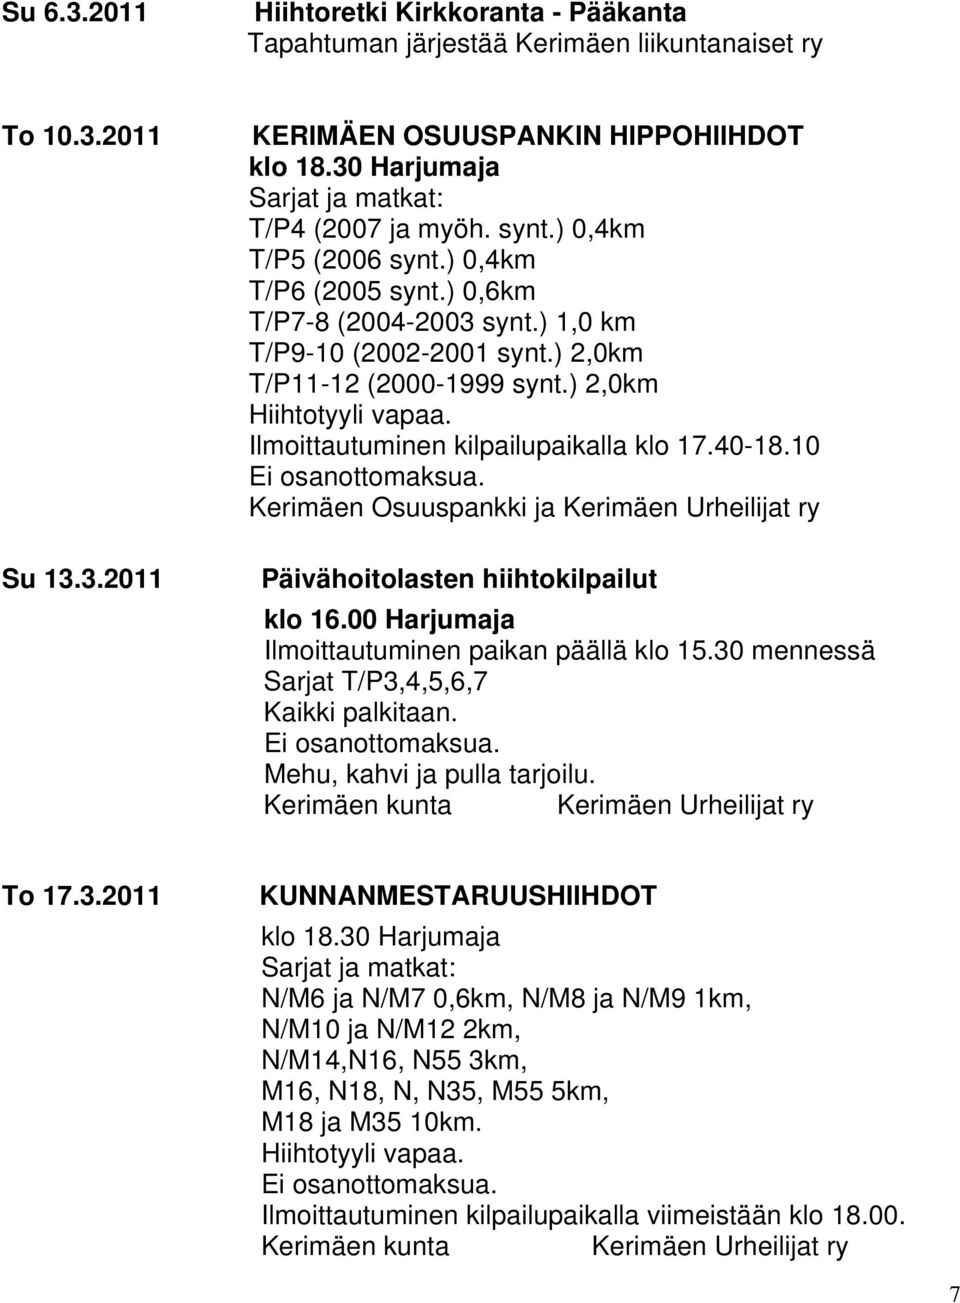 40-18.10 Kerimäen Osuuspankki ja Kerimäen Urheilijat ry Päivähoitolasten hiihtokilpailut klo 16.00 Harjumaja Ilmoittautuminen paikan päällä klo 15.30 mennessä Sarjat T/P3,4,5,6,7 Kaikki palkitaan.